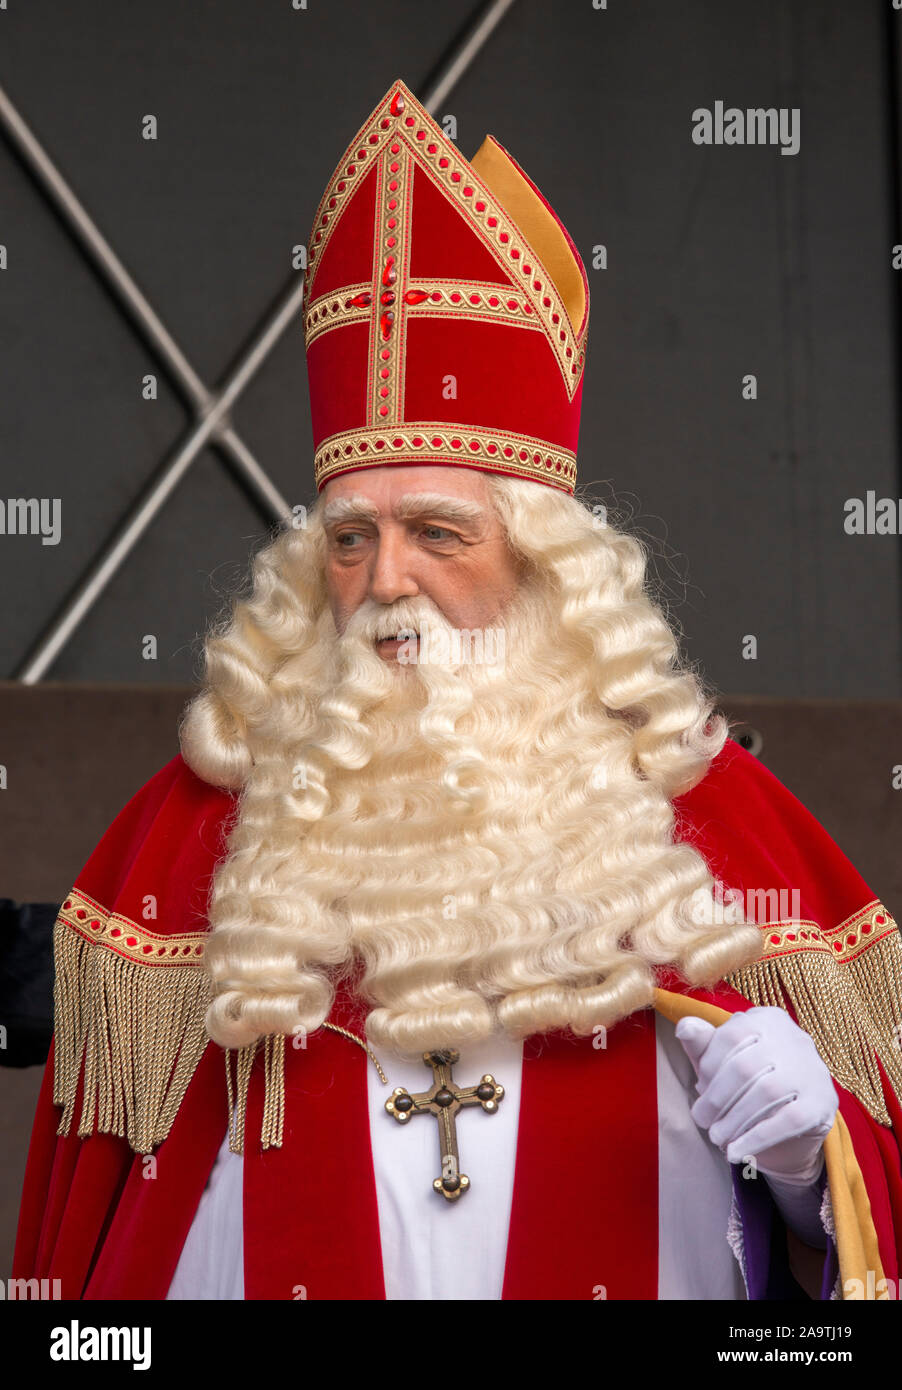 ENSCHEDE, Niederlande - 16.November 2019: Portrait des niederländischen Weihnachtsmanns interklaas' genannt. Stockfoto